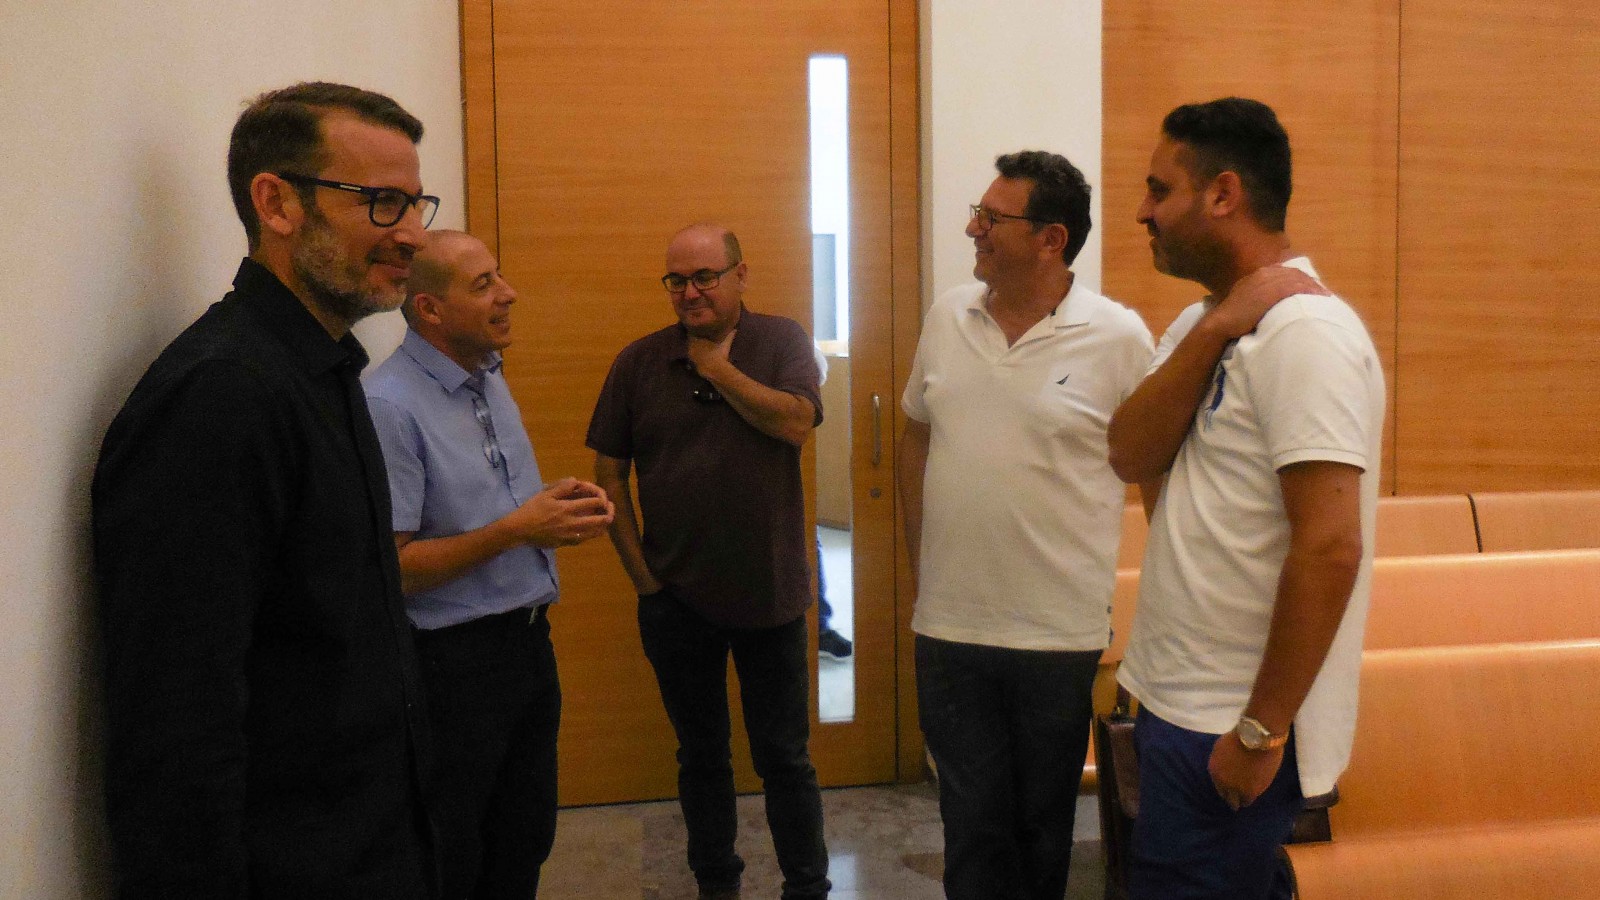 ועדת עובדי חברת החשמל וההנהלה בפתח הדיון על העיצומים בבית הדין האזורי לעבודה בחיפה (צילום: ארז רביב)